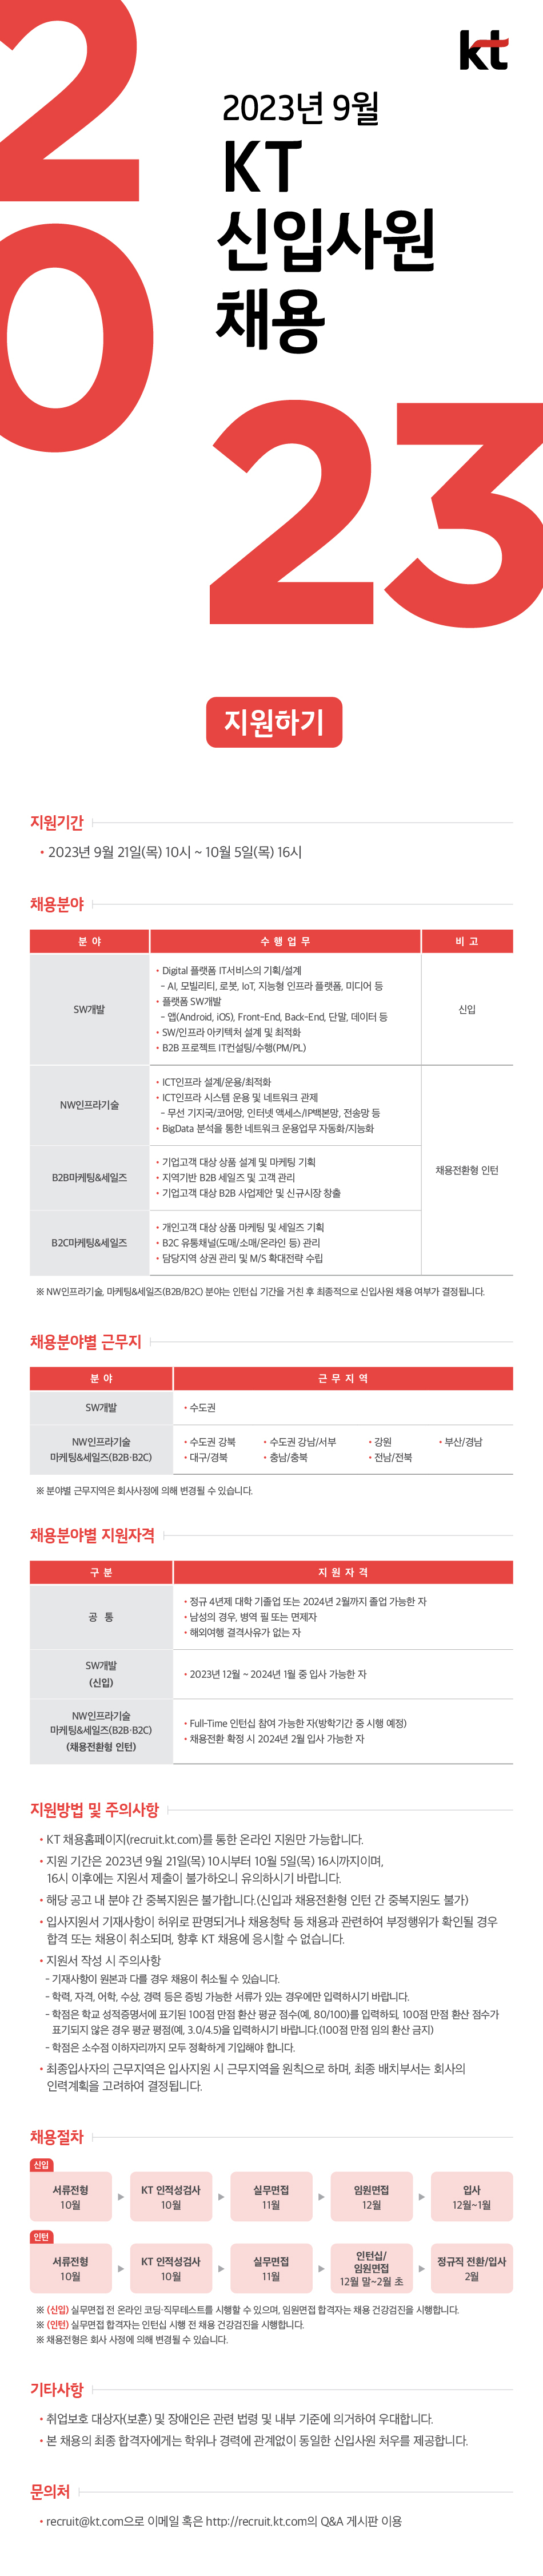 KT_202309_신입사원공개채용.jpg